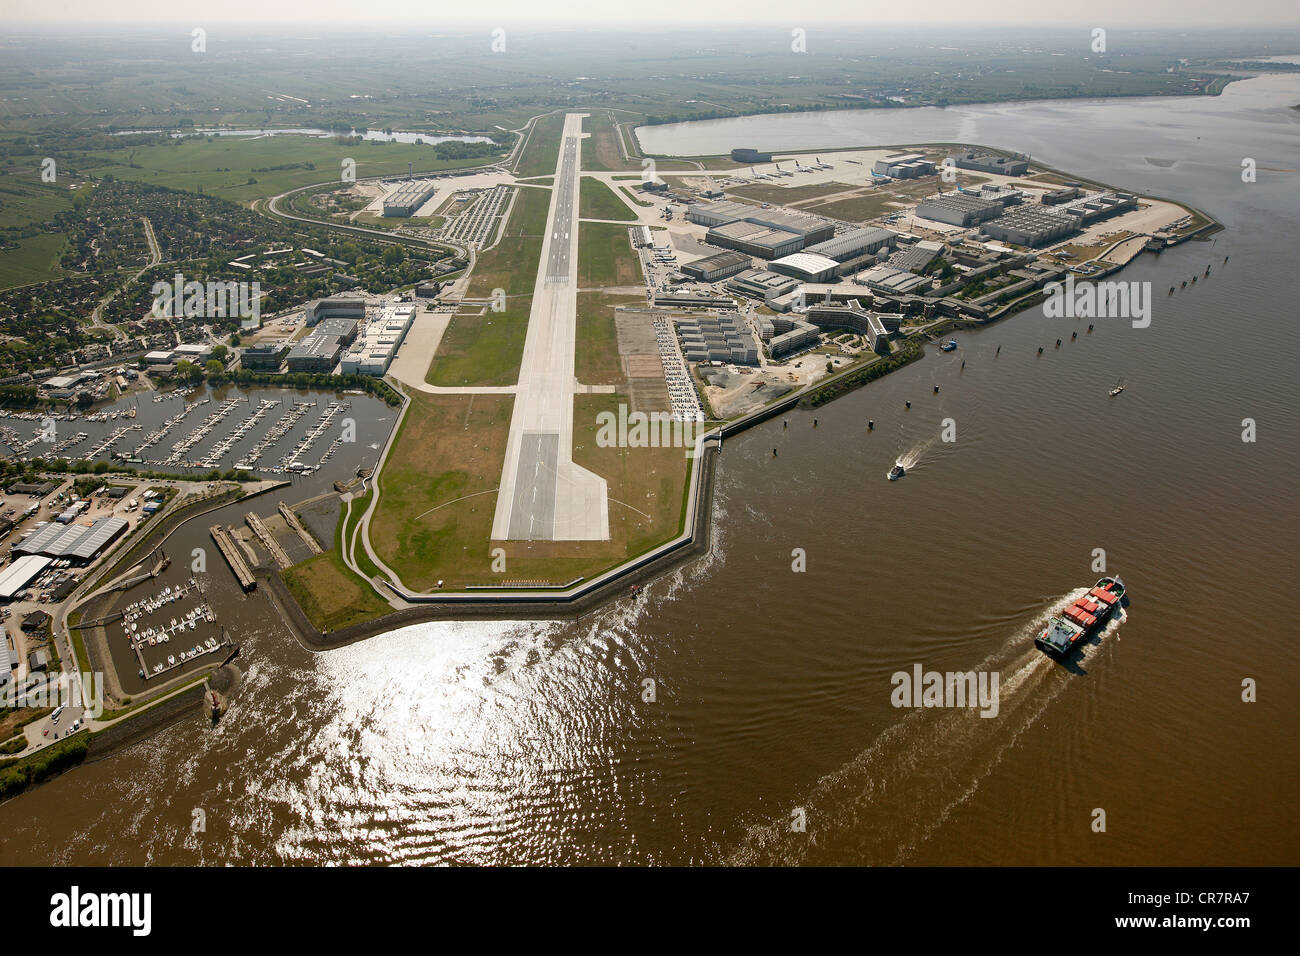 Luftbild, Landebahn Flughafen Hamburg-Finkenwerder und Räumlichkeiten des Flugzeugherstellers Airbus, Hamburg, Deutschland, Europa Stockfoto